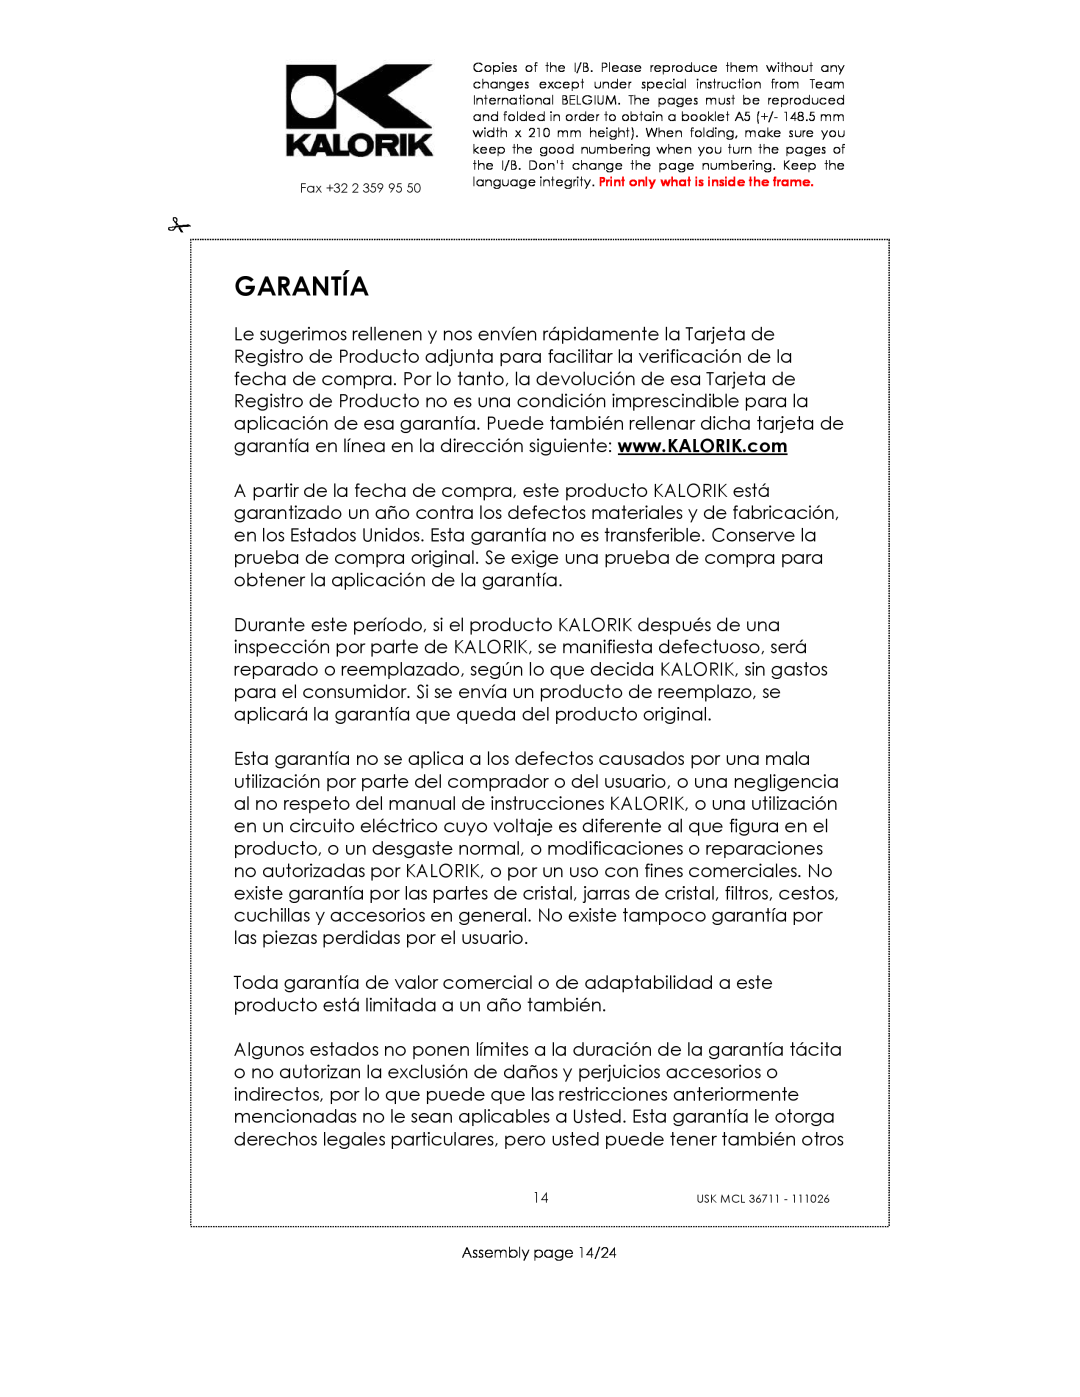 Kalorik USK MCL 36711 manual Garantía, Assembly page 14/24 